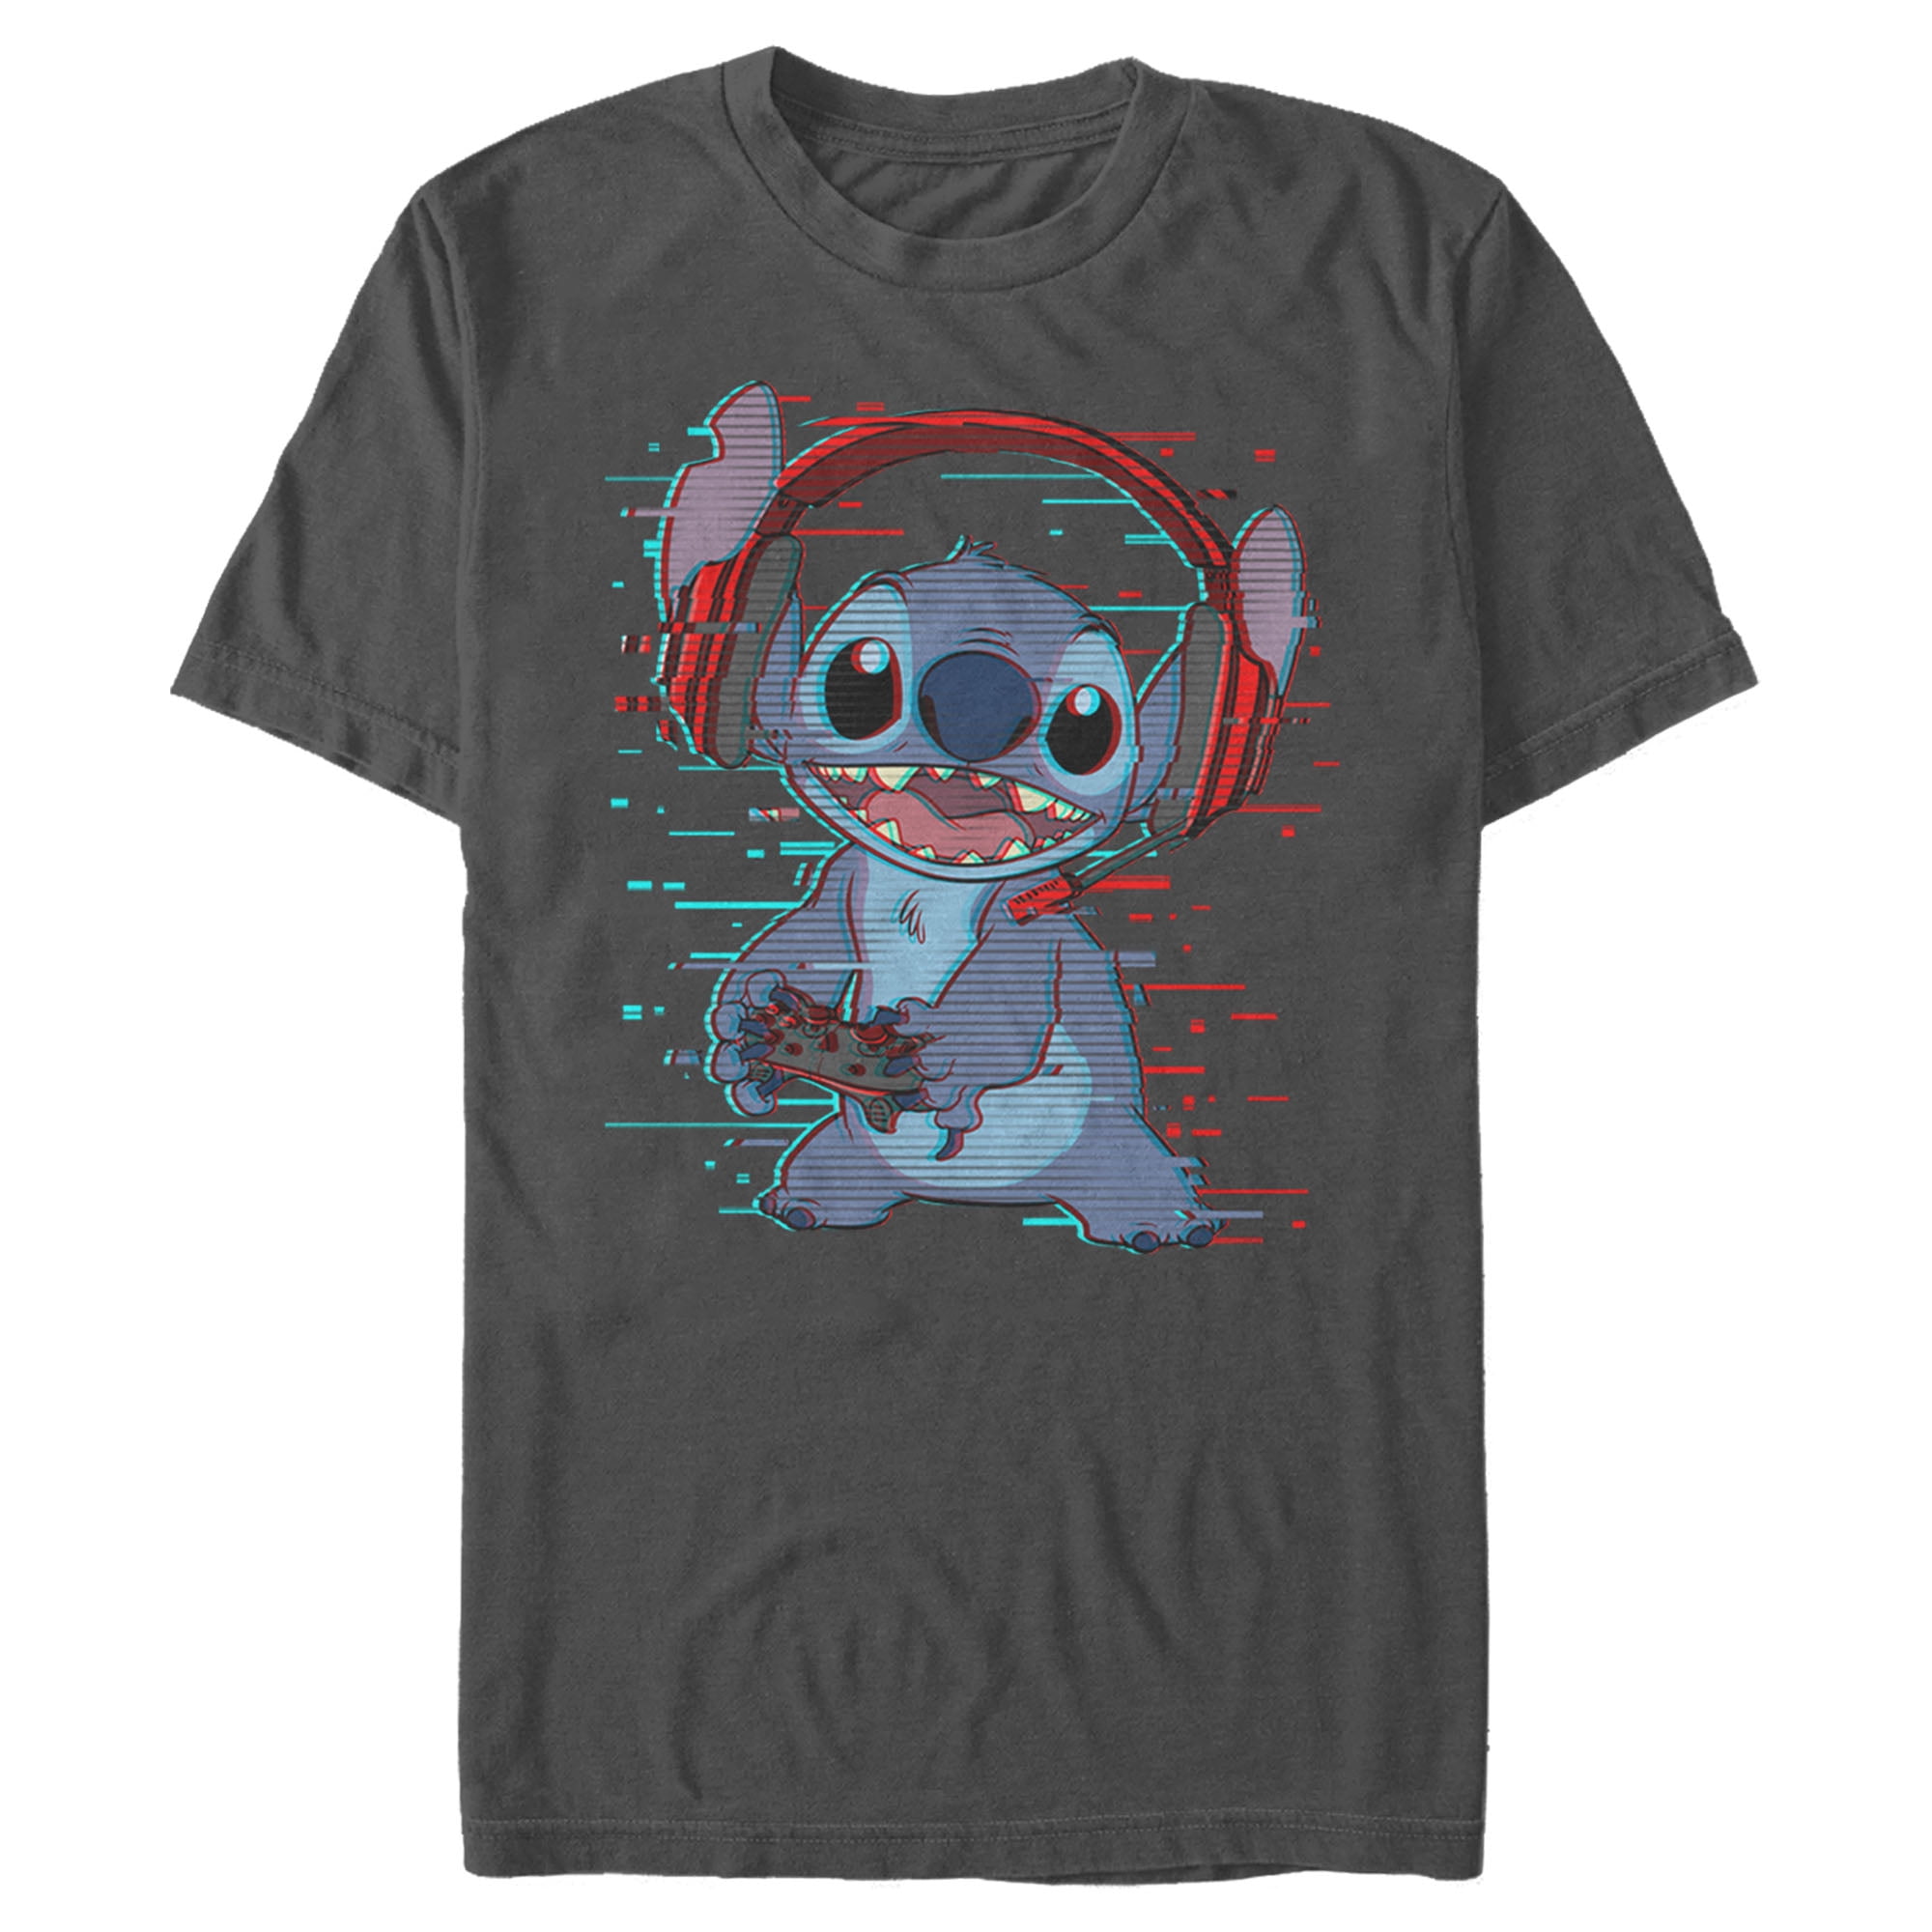 T-shirt Lilo & Stitch Gamer - Un vêtement pour les passionnés de